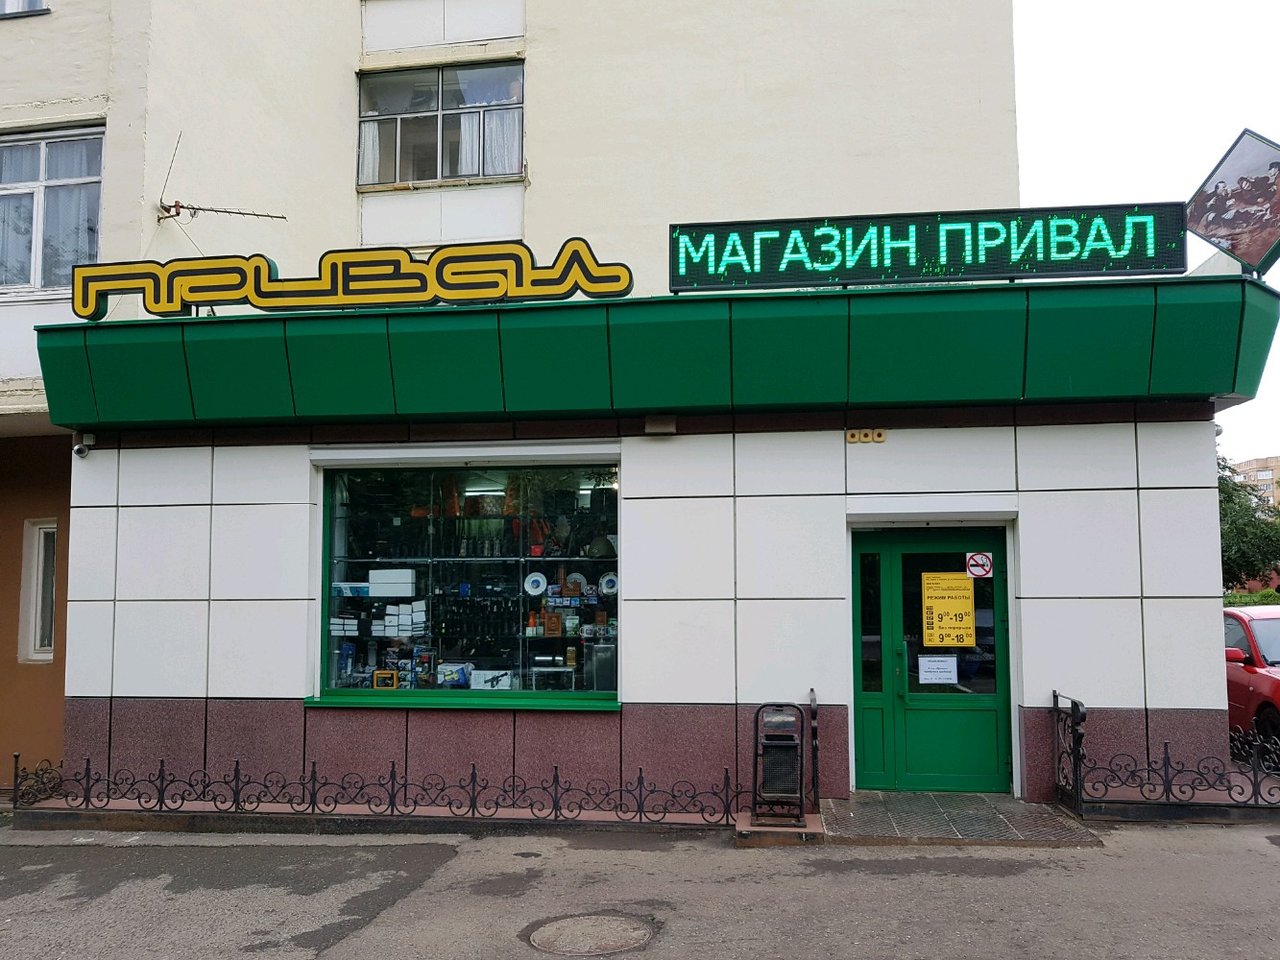 Магазин Привал Саранск Каталог Товаров И Цены